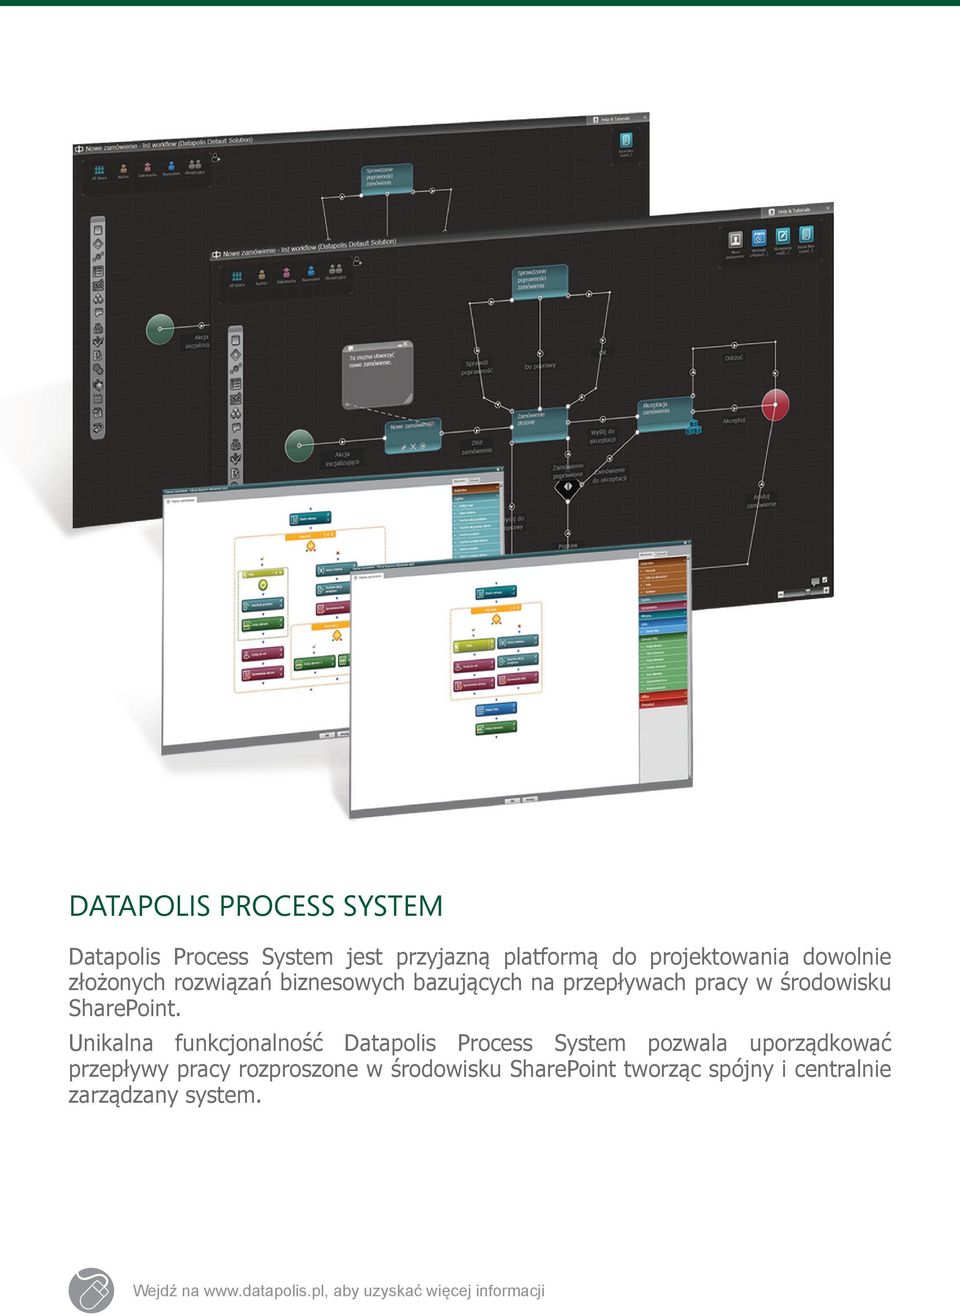 Unikalna funkcjonalność Datapolis Process System pozwala uporządkować przepływy pracy rozproszone w